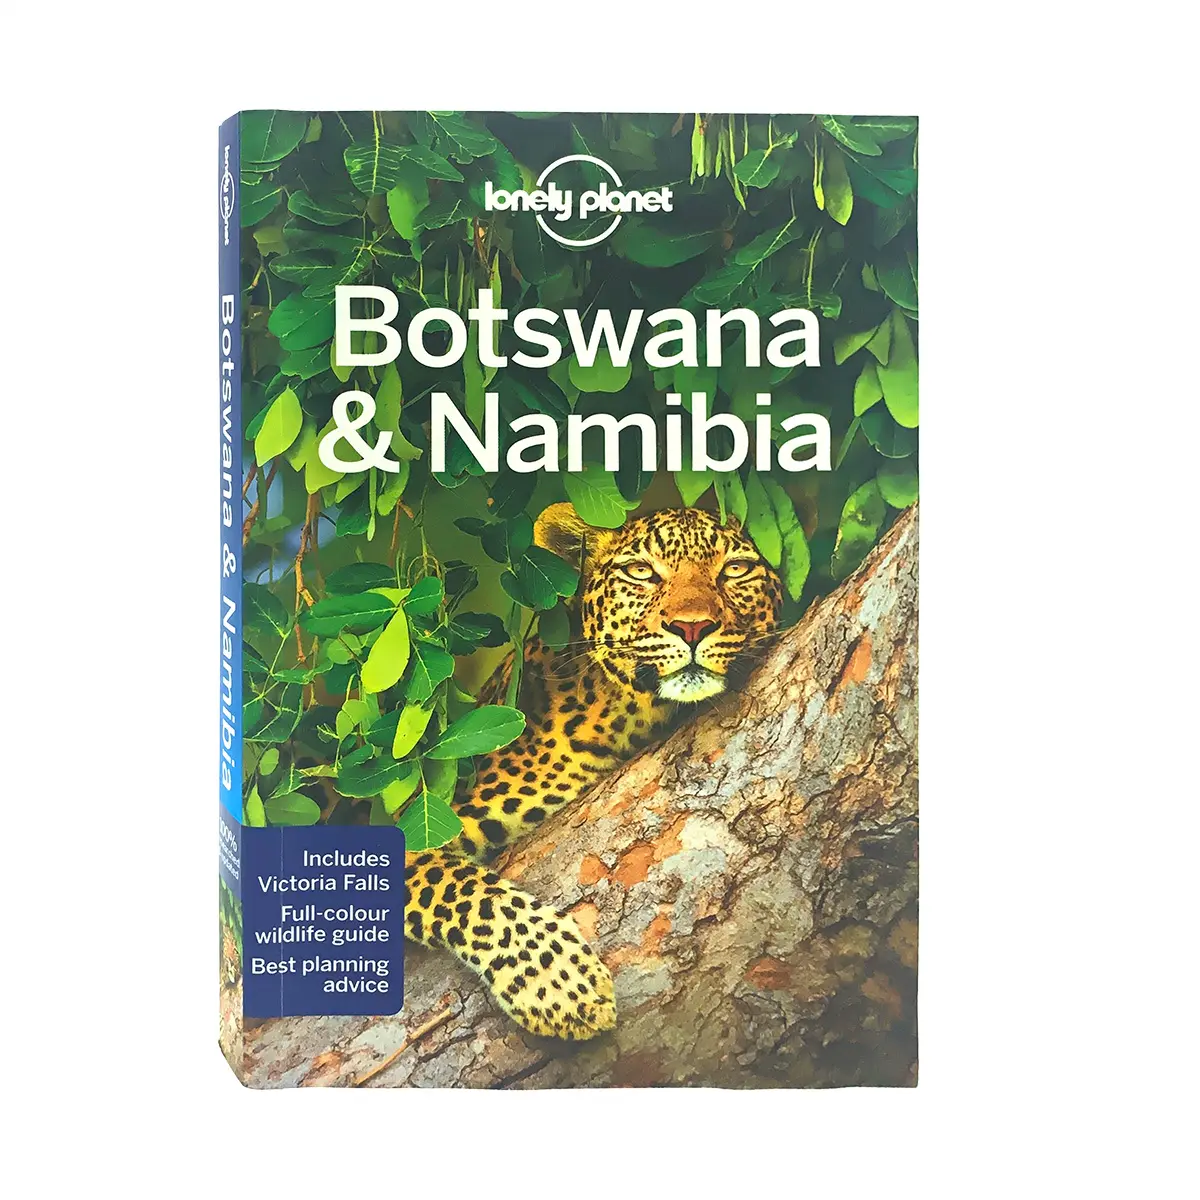 Дешевая раскраска на заказ, услуга печати книг, перерабатываемая компания Botswana & Namibia, путеводитель, поставщик, мягкая обложка для книг в мягкой обложке